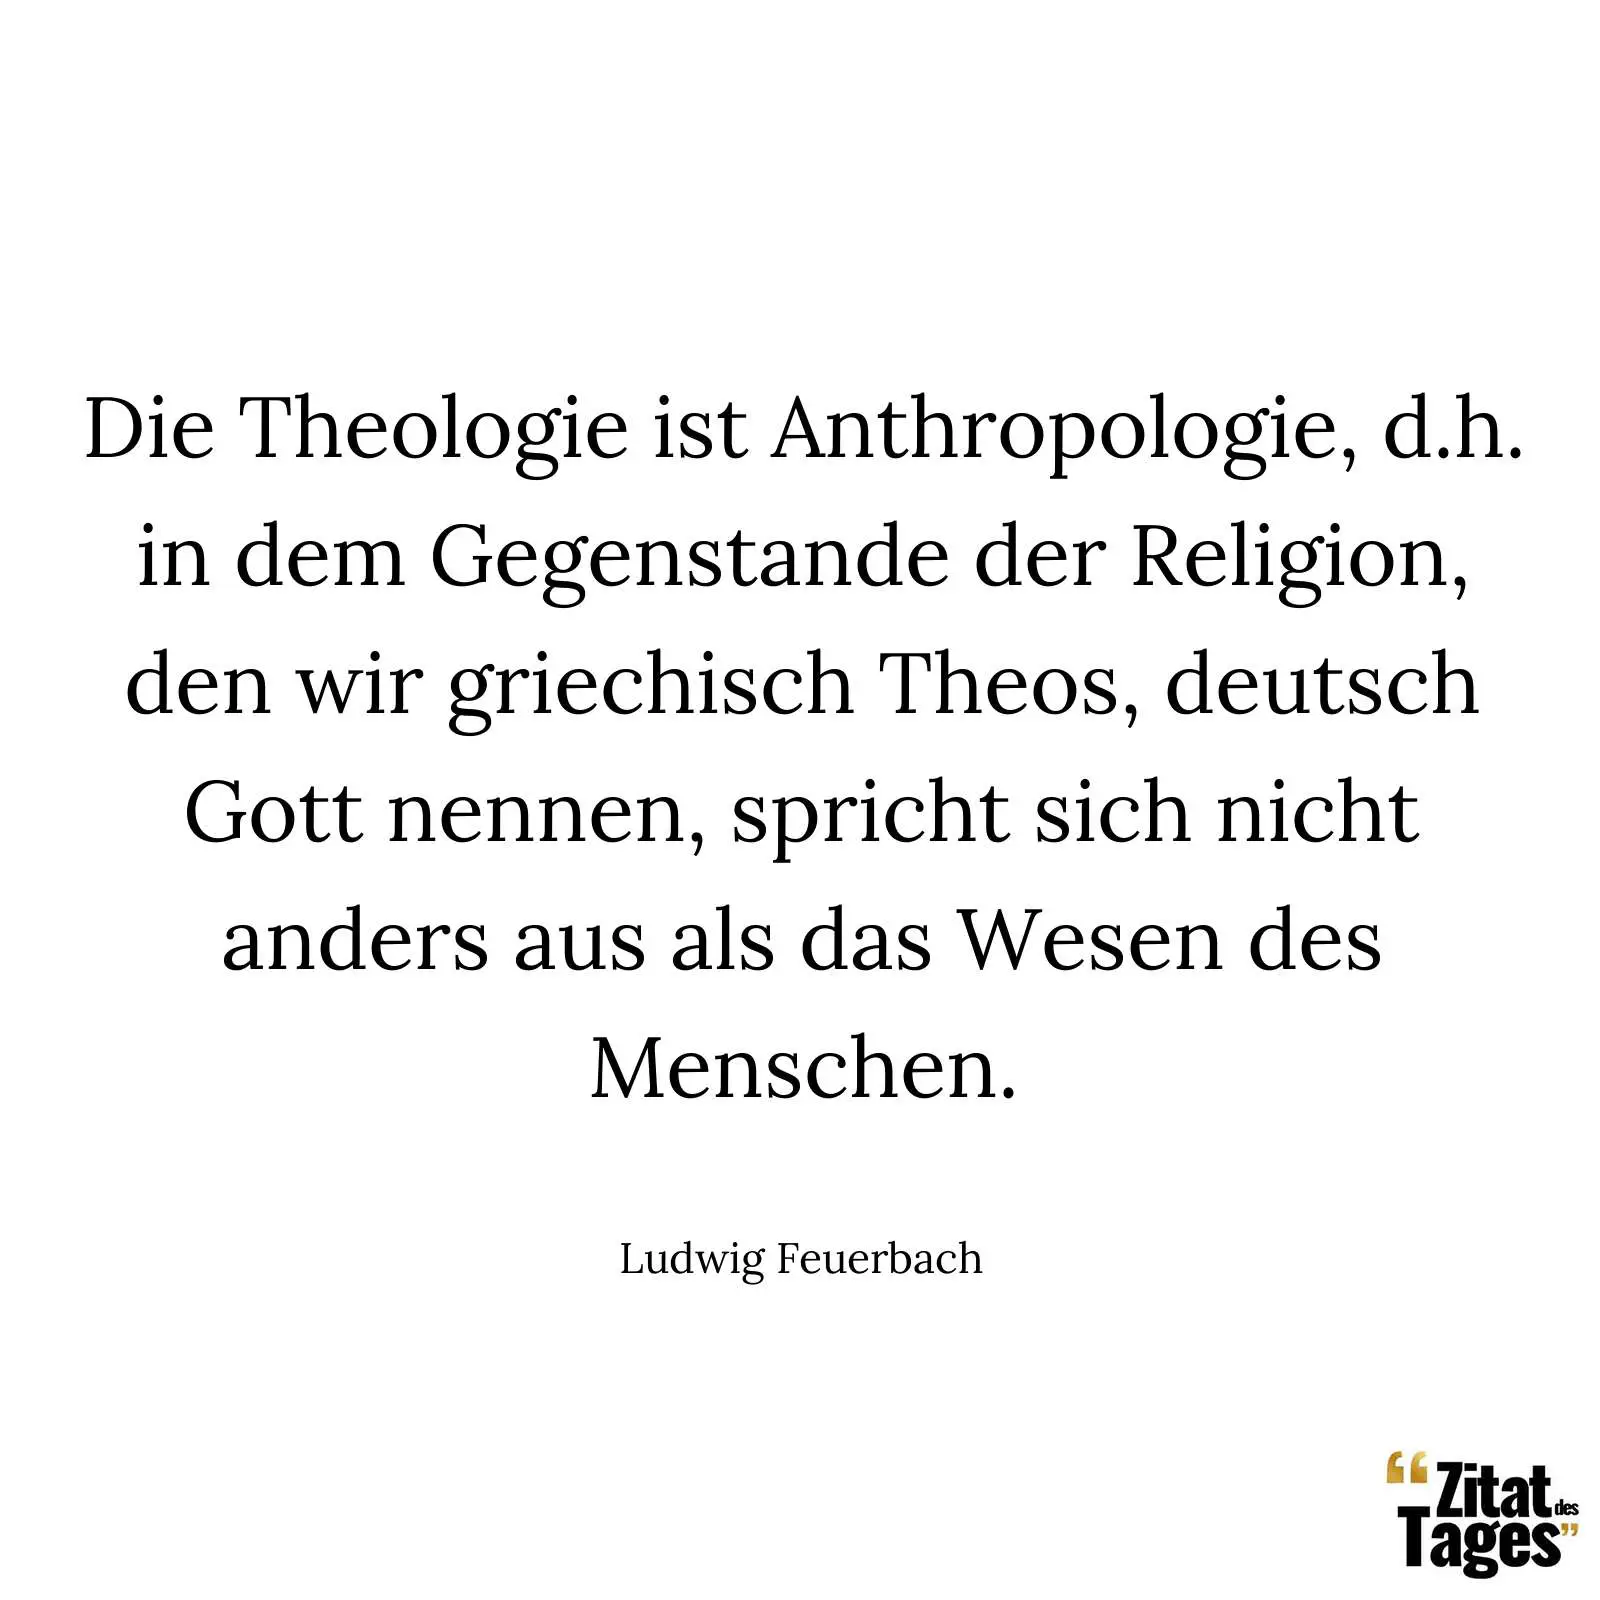 Die Theologie ist Anthropologie, d.h. in dem Gegenstande der Religion, den wir griechisch Theos, deutsch Gott nennen, spricht sich nicht anders aus als das Wesen des Menschen. - Ludwig Feuerbach